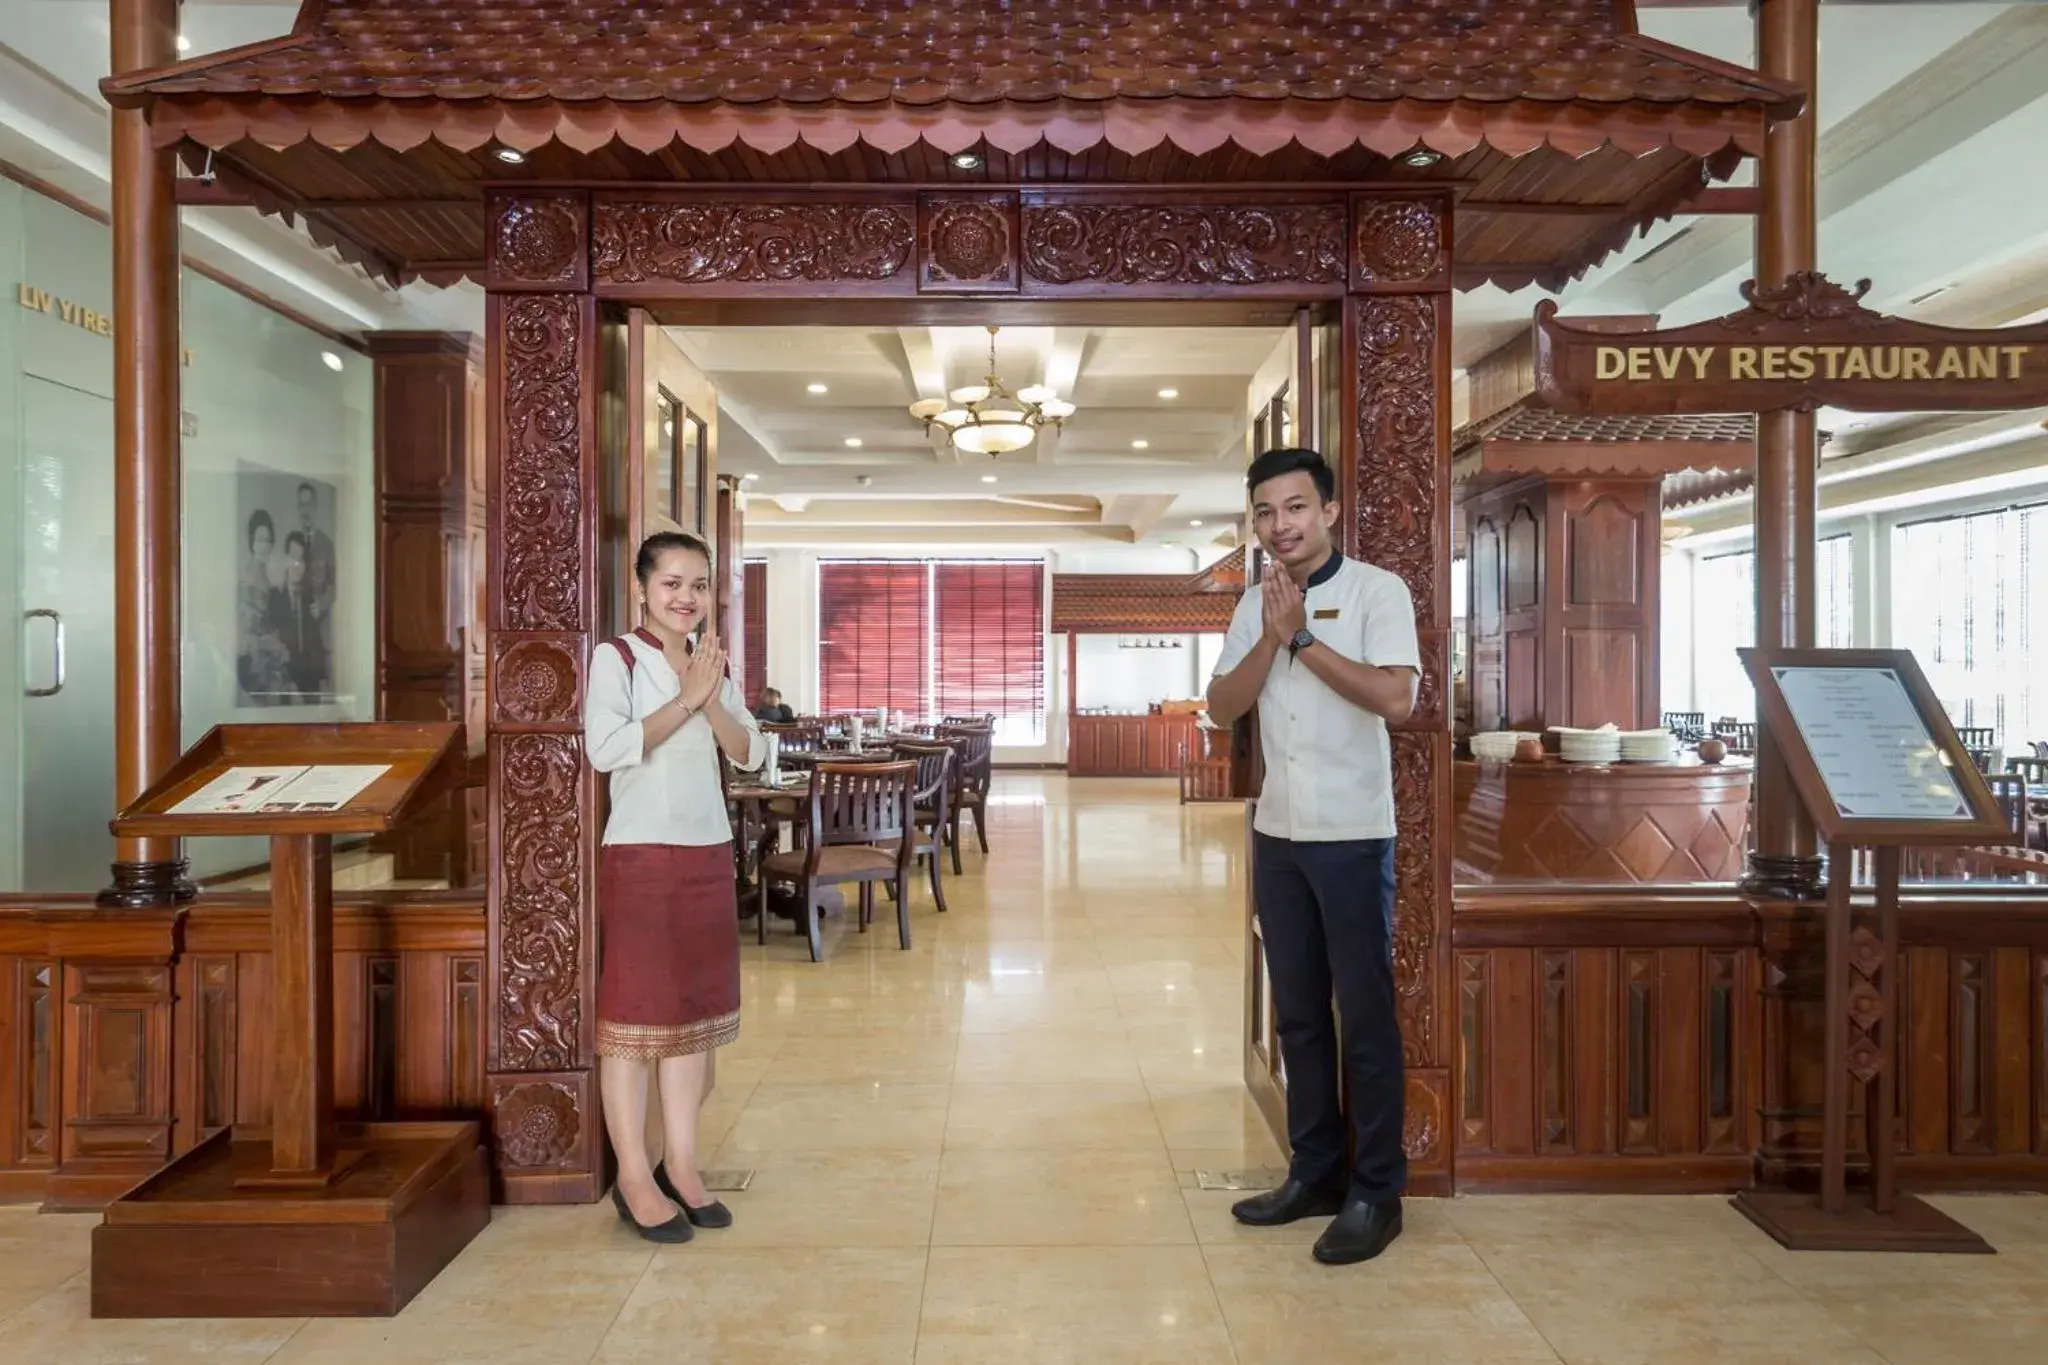 Staff in Kingdom Angkor Hotel